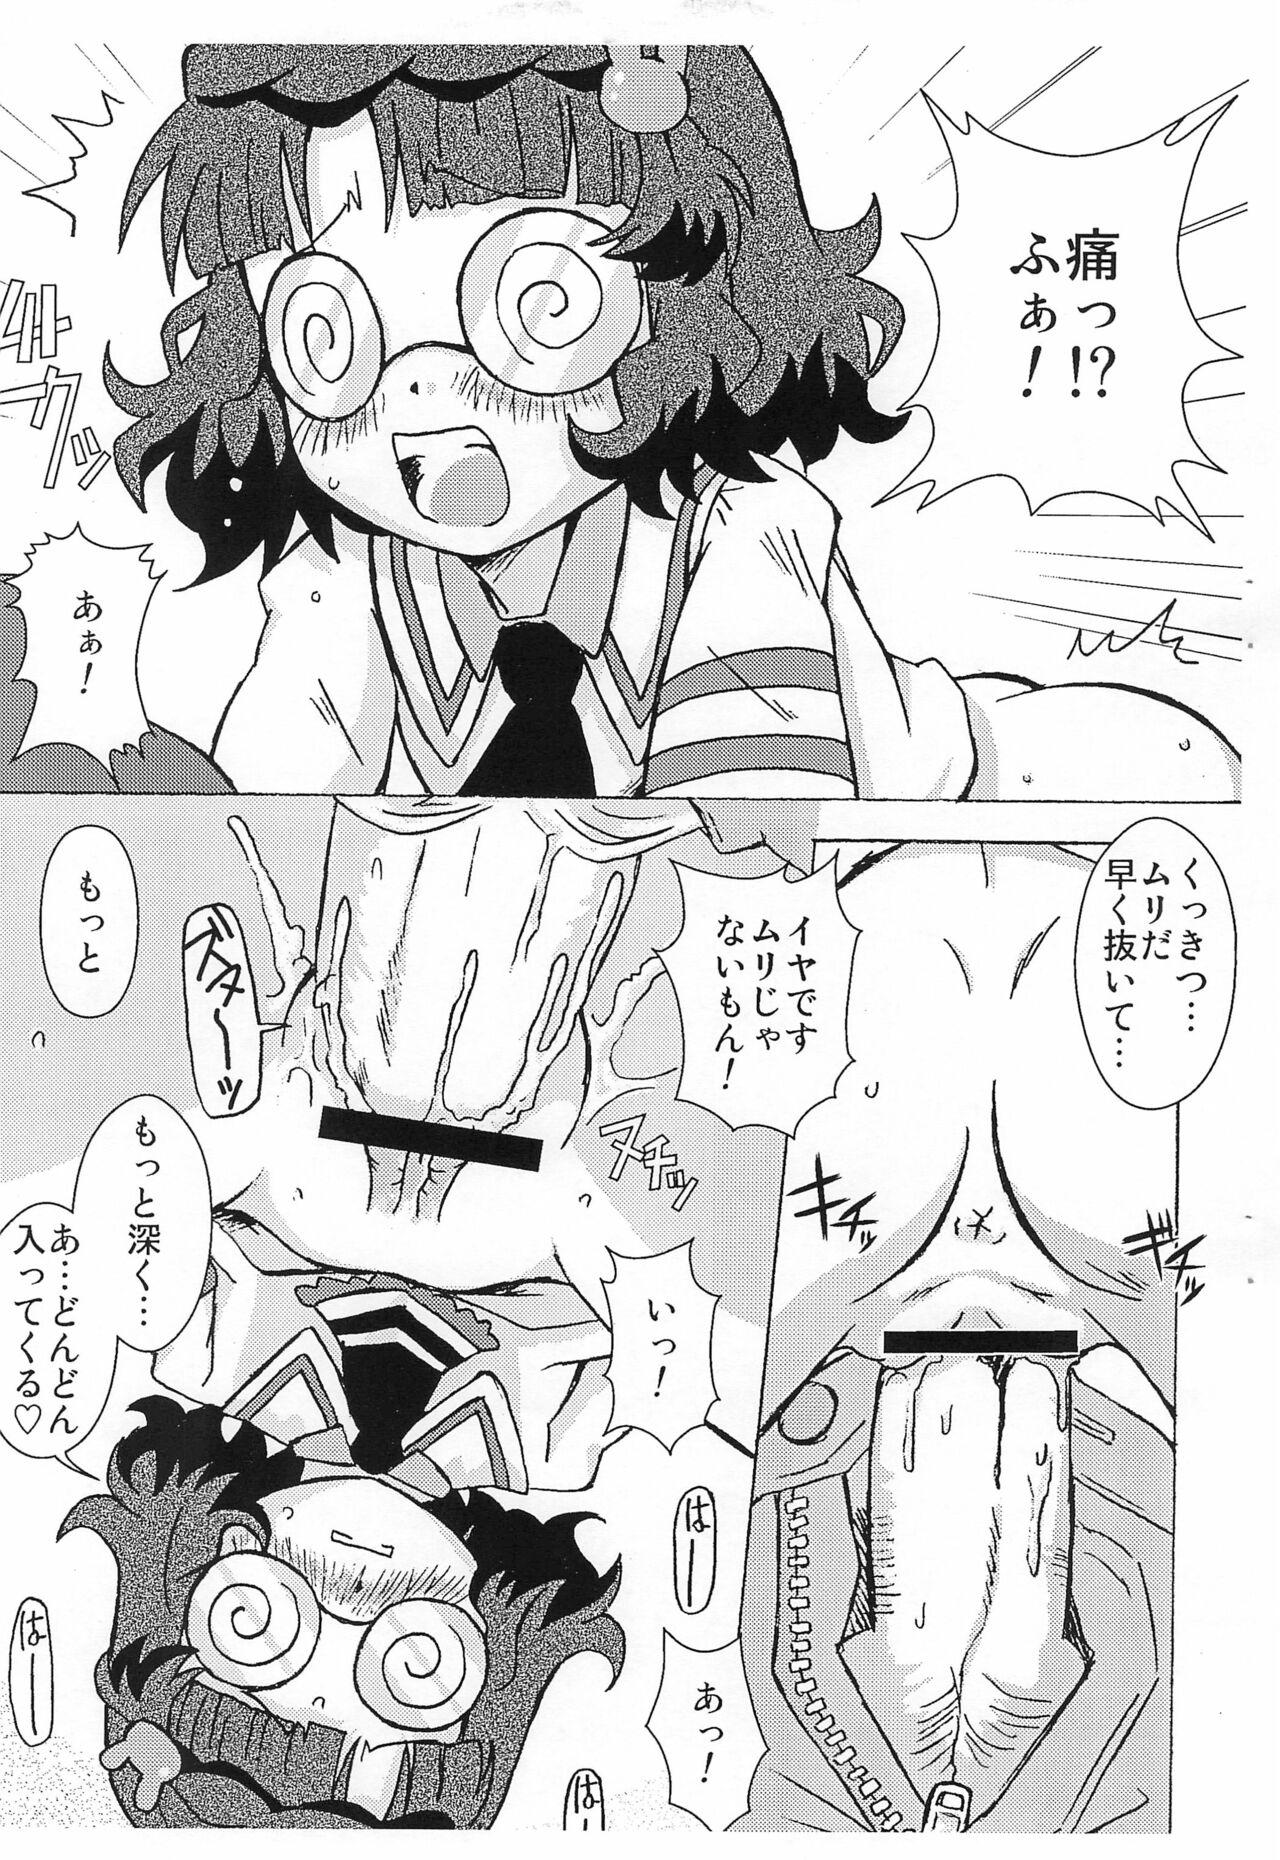 Black 4-shoku Ball Pen wa Midori ga Amaru - Anyamaru tantei kiruminzoo | animal detective kiruminzoo Porno 18 - Page 7